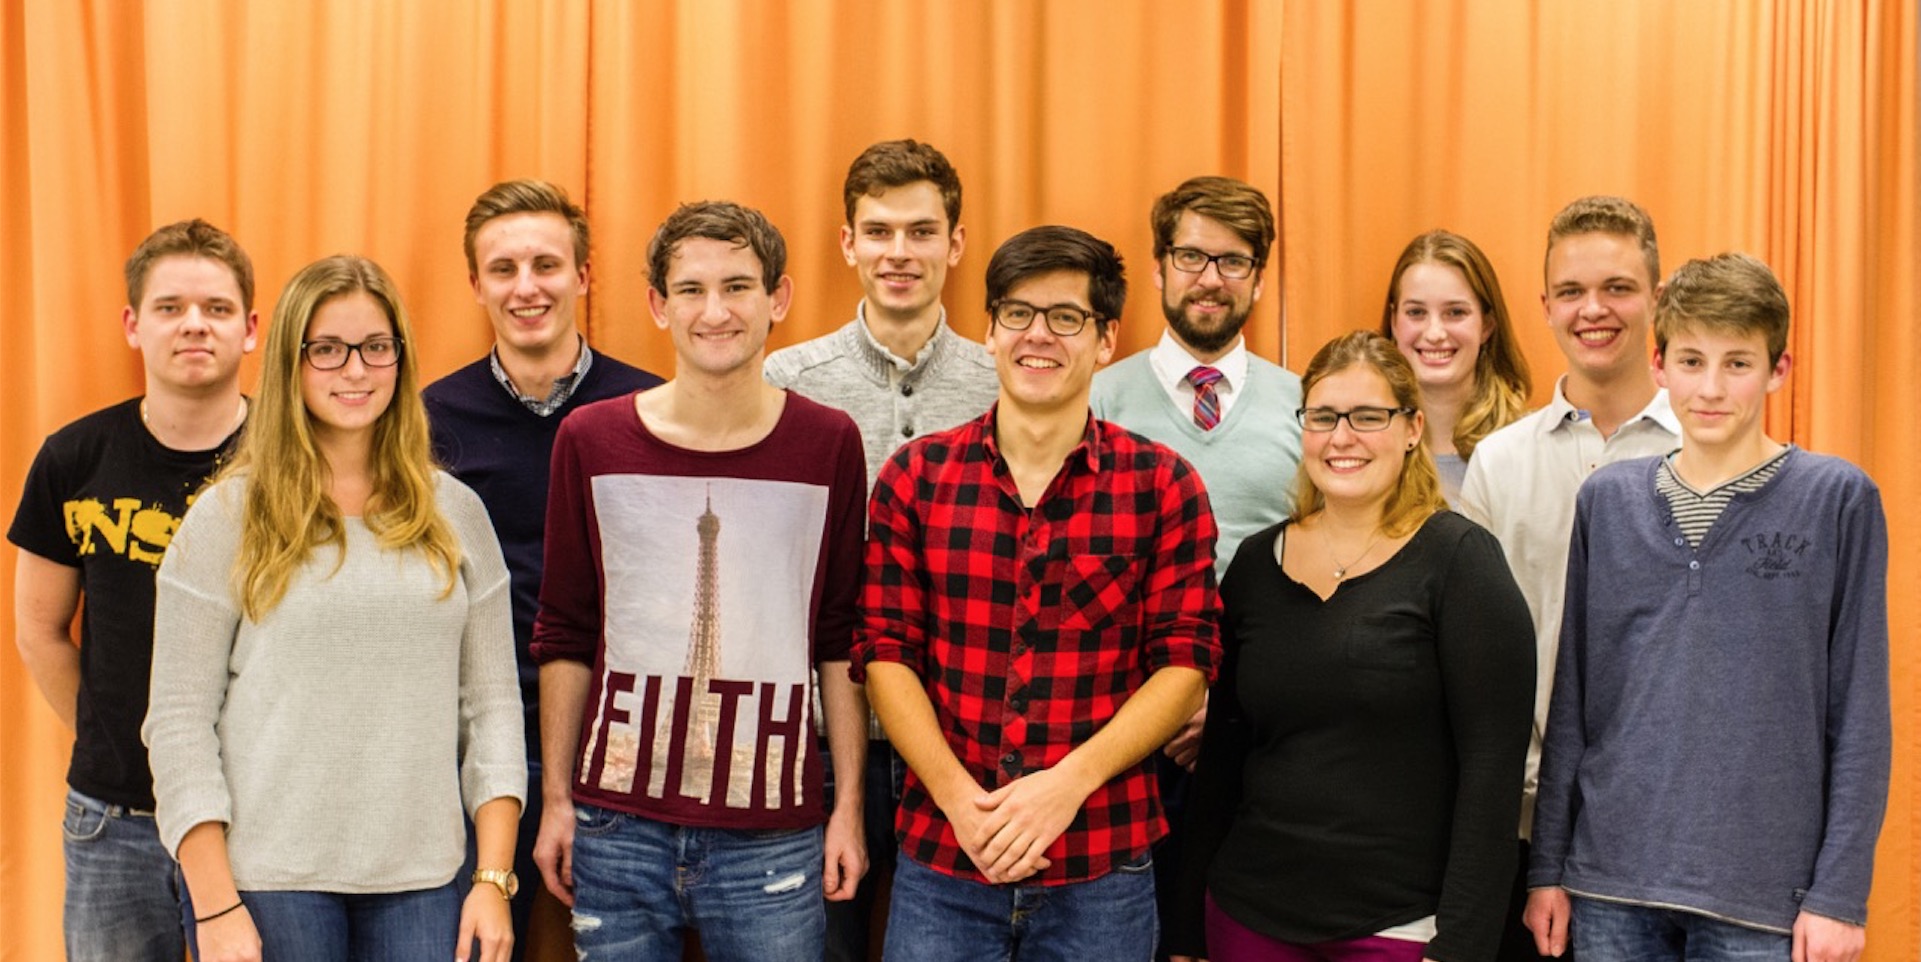 Christian Ruppert neuer Vorsitzender der Jungen Union Flörsheim am Main. Dorothea Thimm bleibt im Vorstand